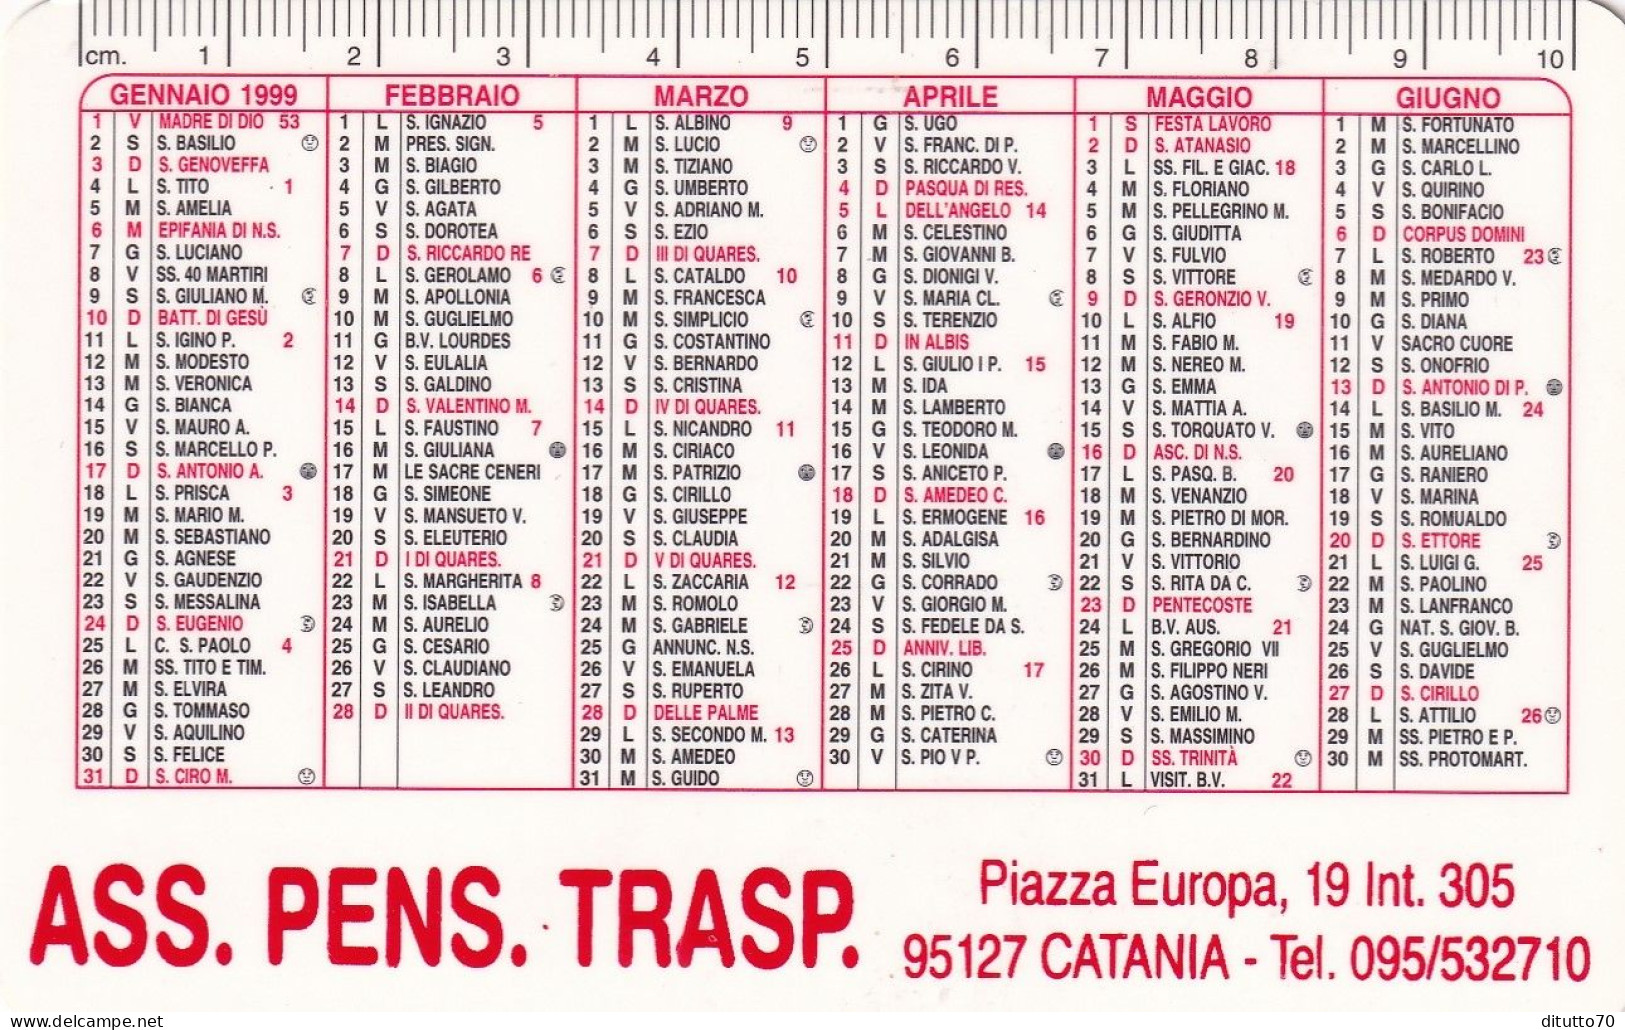 Calendarietto - Ass.pens.trasp. - Catania - Anno 1999 - Kleinformat : 1991-00